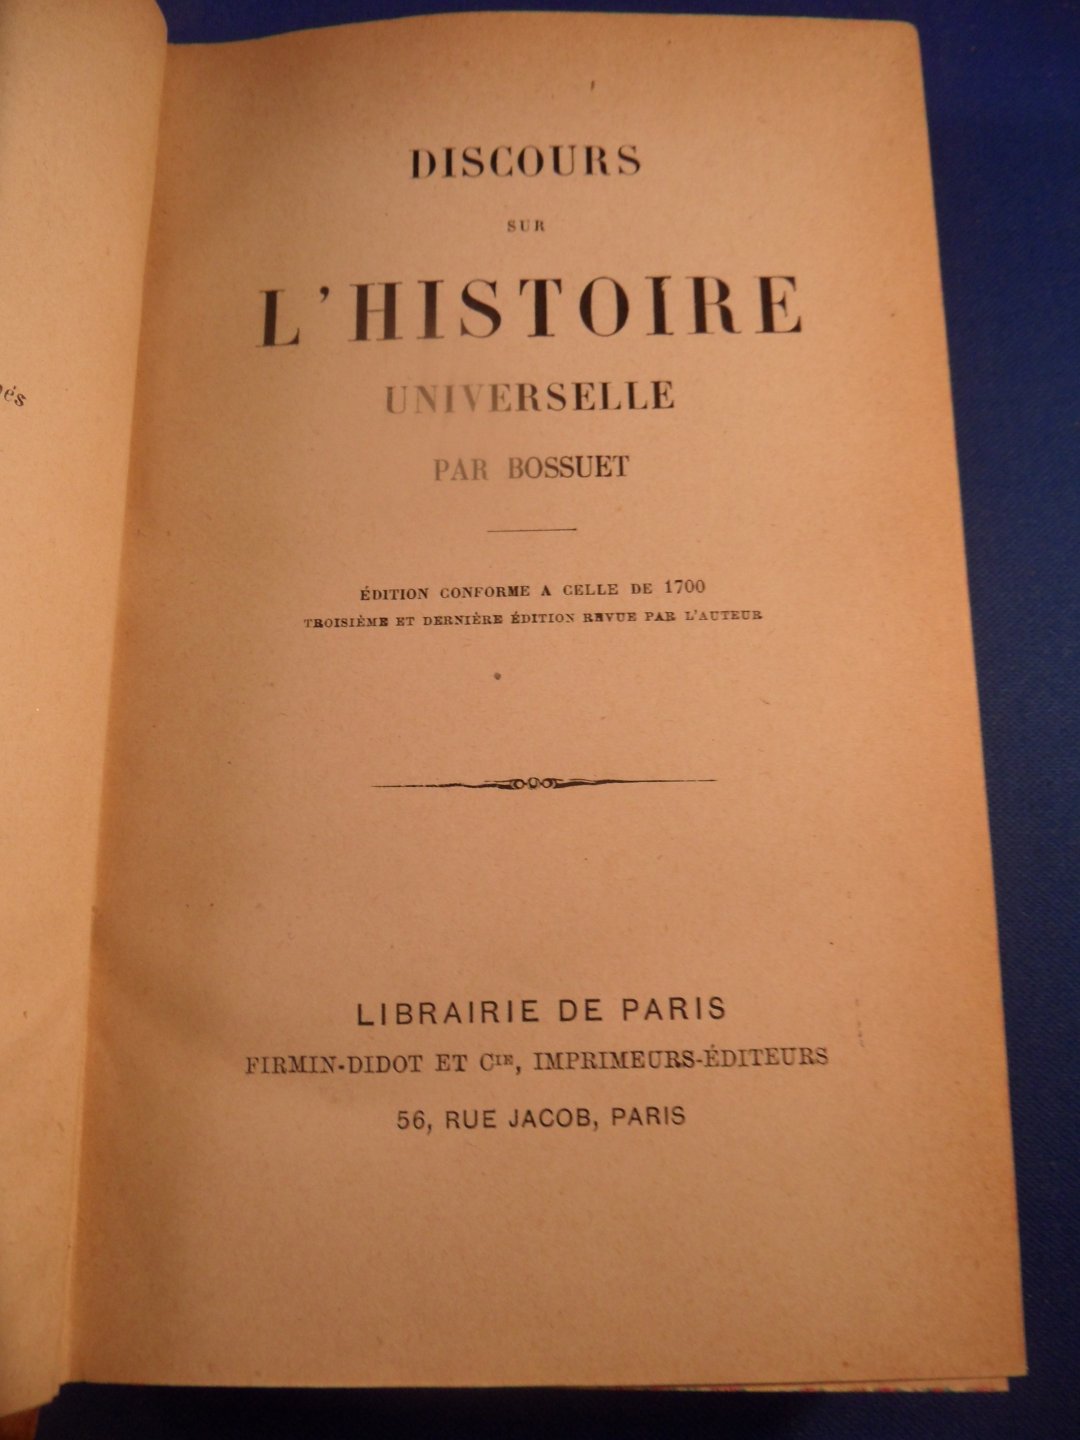 Bossuet - Discours sur l'histoire Universelle. Edition conforme a celle de 1700. Troisième et dernière revue par l'auteur.